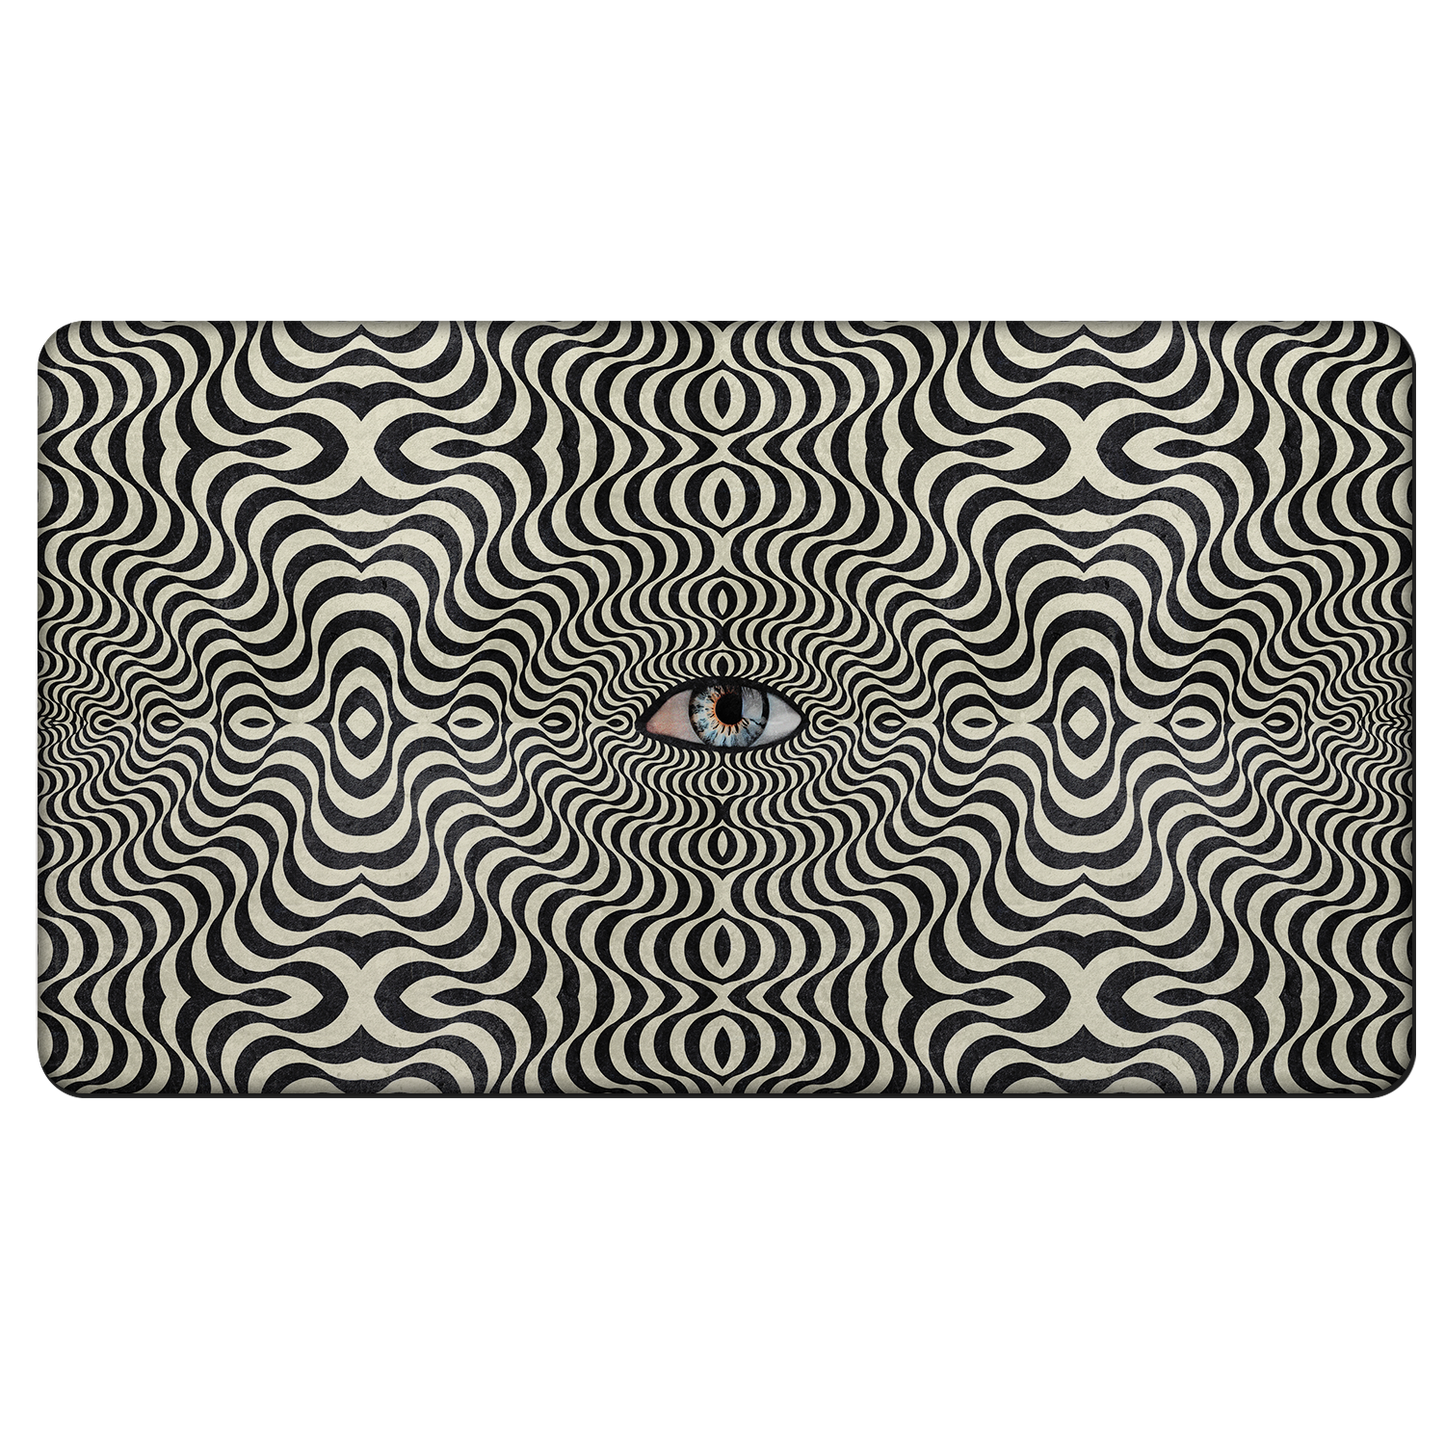 Hypnotic Eye All Over Print Rubber Door Mat